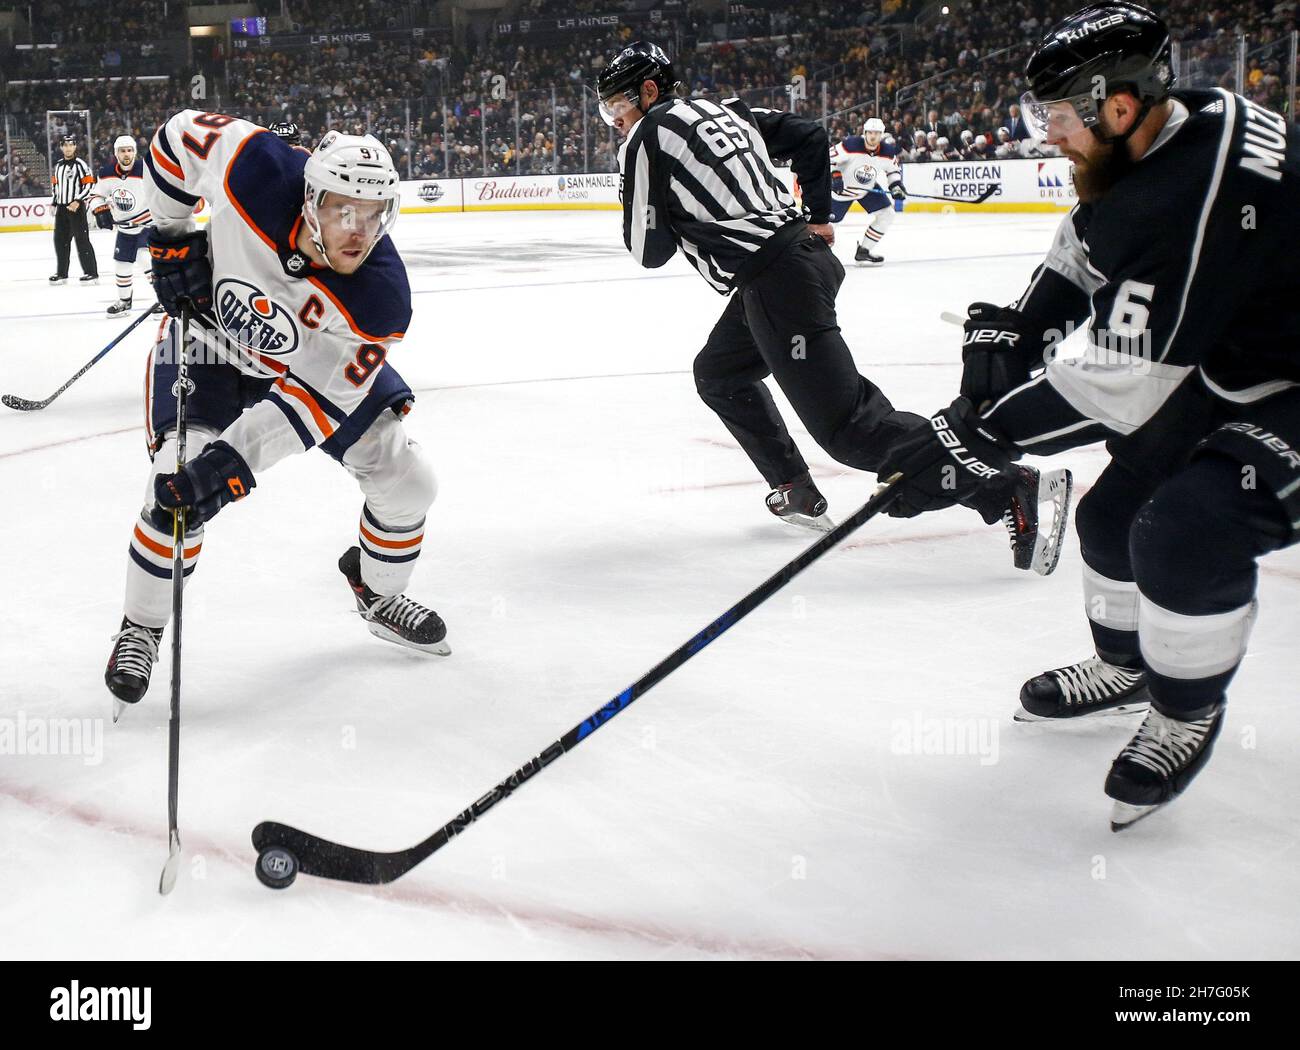 Peking, USA. 24th. Februar 2018. Connor McDavid (L) von Edmonton Oilers spielt mit Jake Muzzin von Los Angeles Kings während eines NHL-Hockeyspiels 2017-2018 in Los Angeles, USA, am 24. Februar 2018. Kredit: Zhao Hanrong/Xinhua/Alamy Live Nachrichten Stockfoto